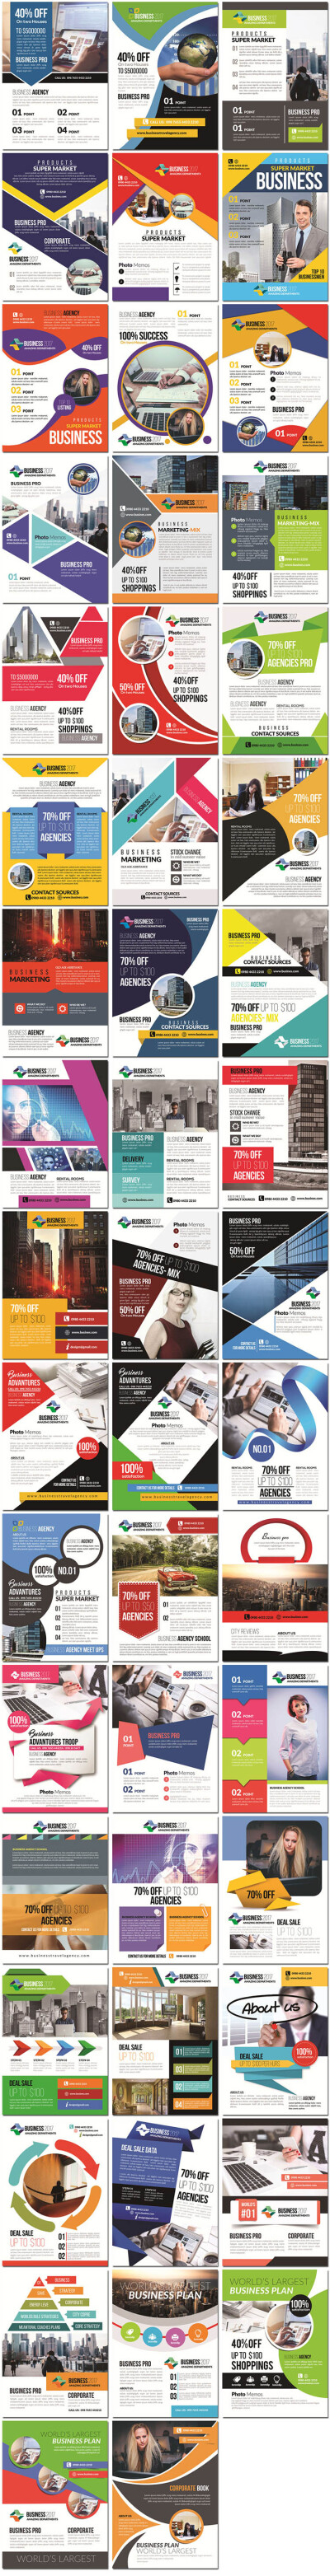 欧美外国商务商业教育企业公司英文dm宣传单页海报设计psd模板素